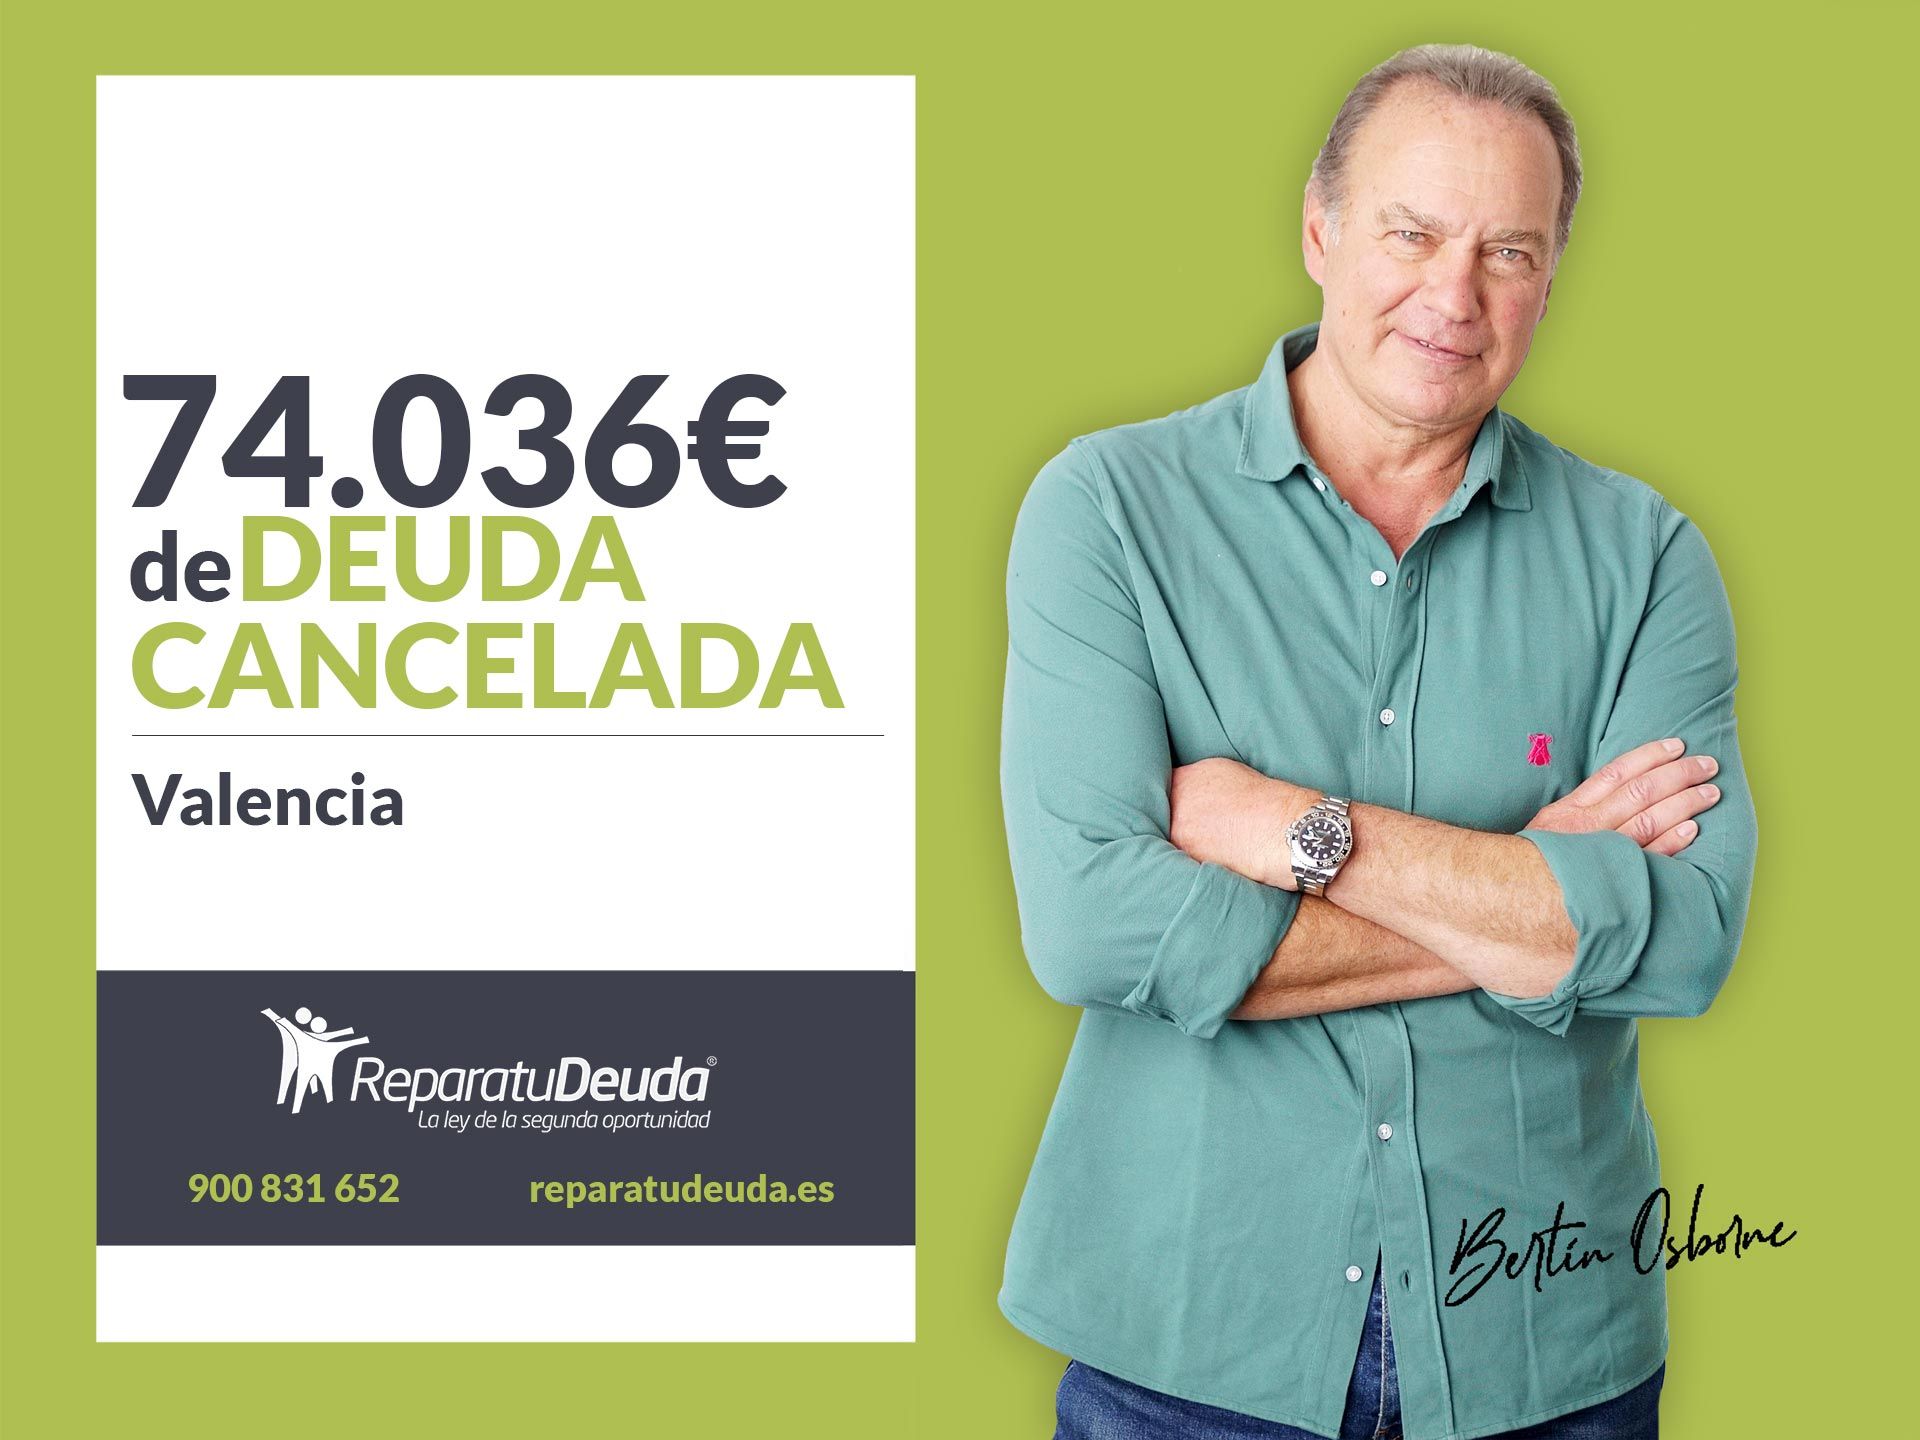 Repara tu Deuda Abogados cancela 74.036? en Valencia con la Ley de Segunda Oportunidad